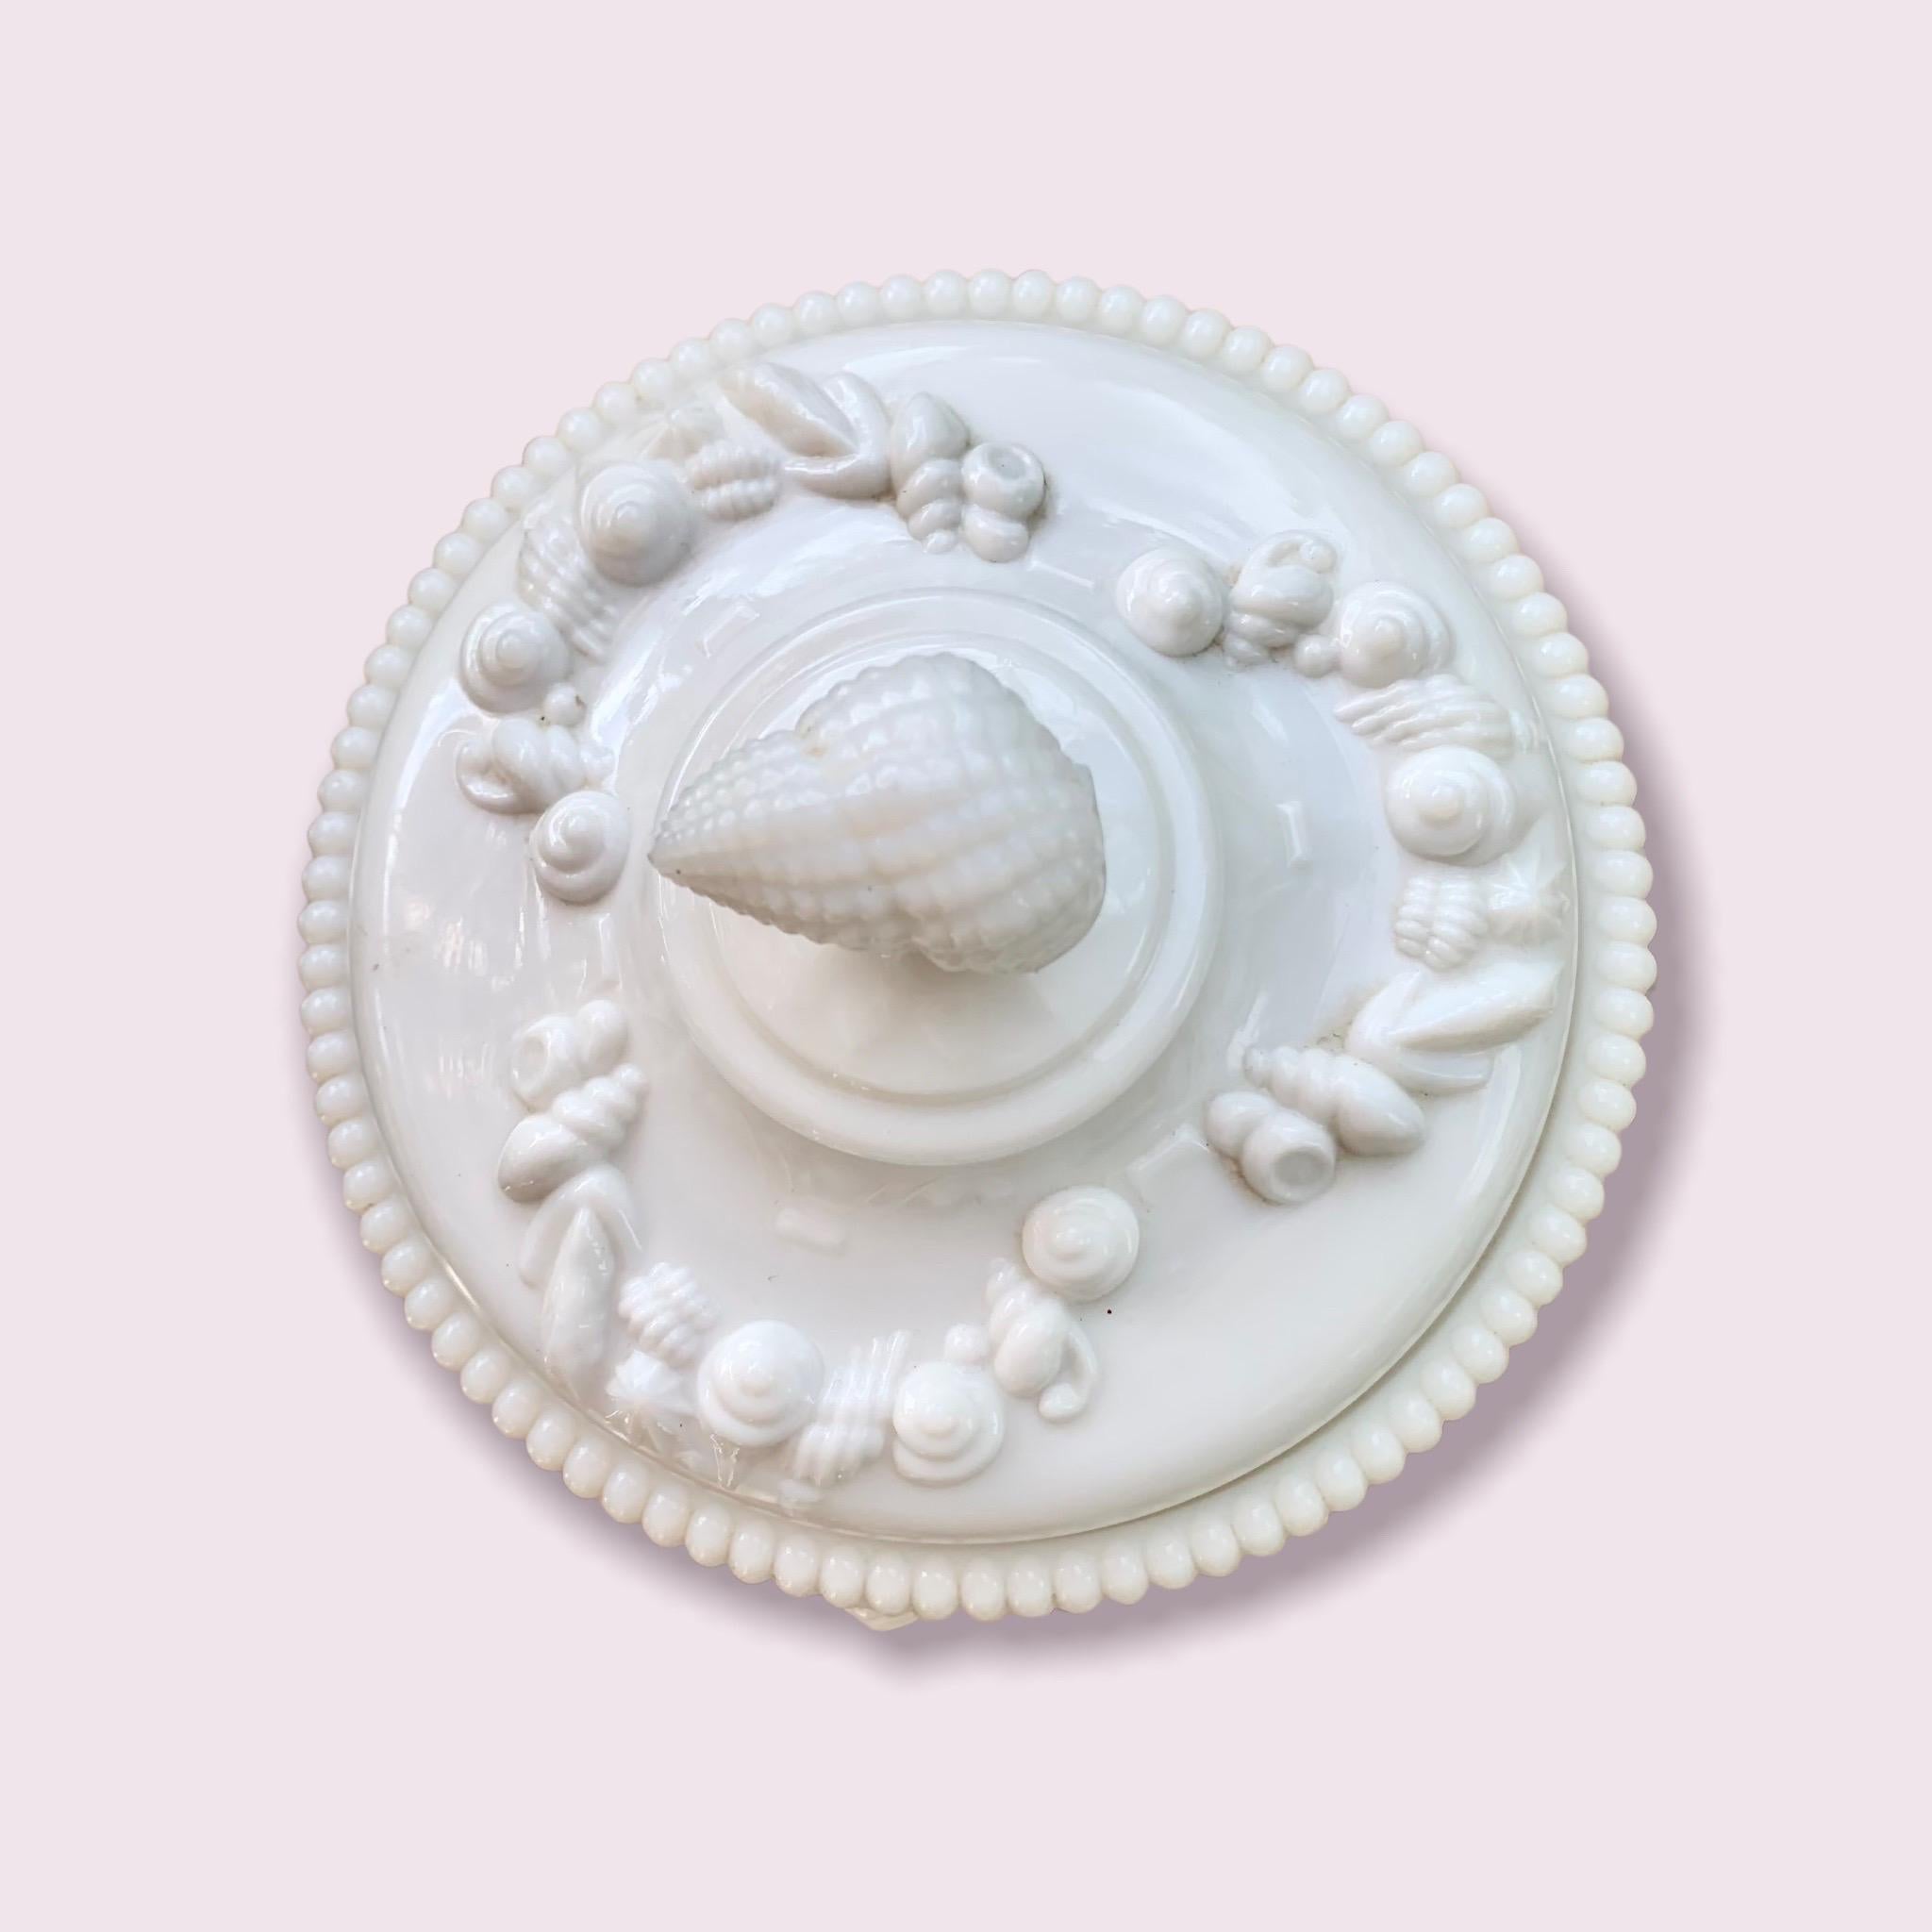 Bonbonnière en verre laiteux des années 1950 de Westmoreland, au motif Argonaut, avec de jolies guirlandes de coquillages, des perles, des pieds en forme de dauphin et une poignée en forme de coquillage. 

Fabriqué pour la première fois par